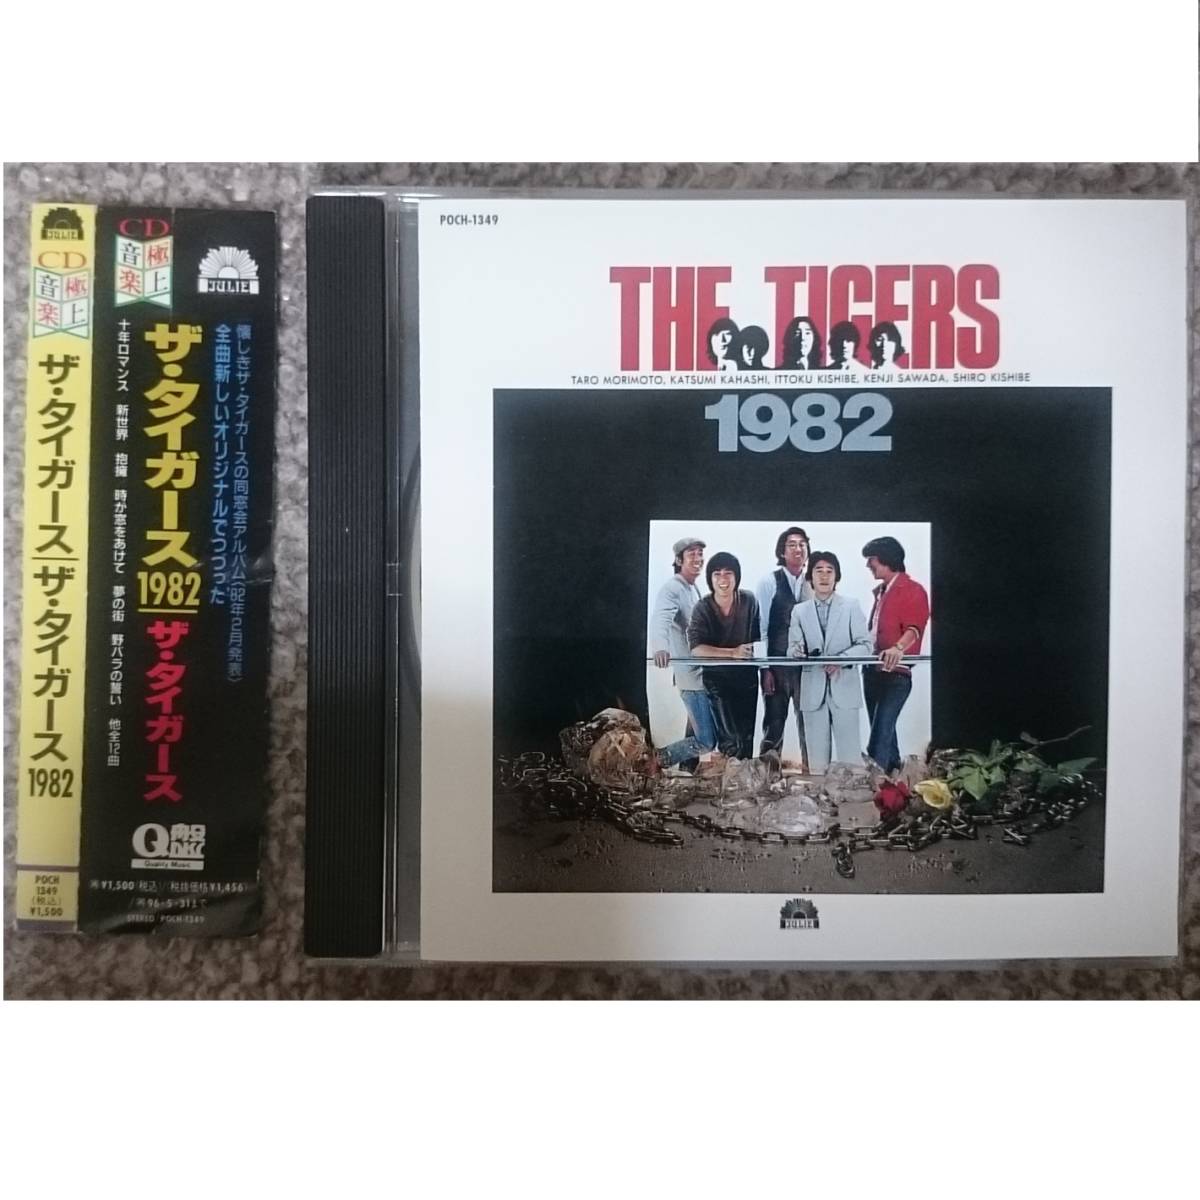 Kf The Tigers The Tigers 1982 CD прекращен